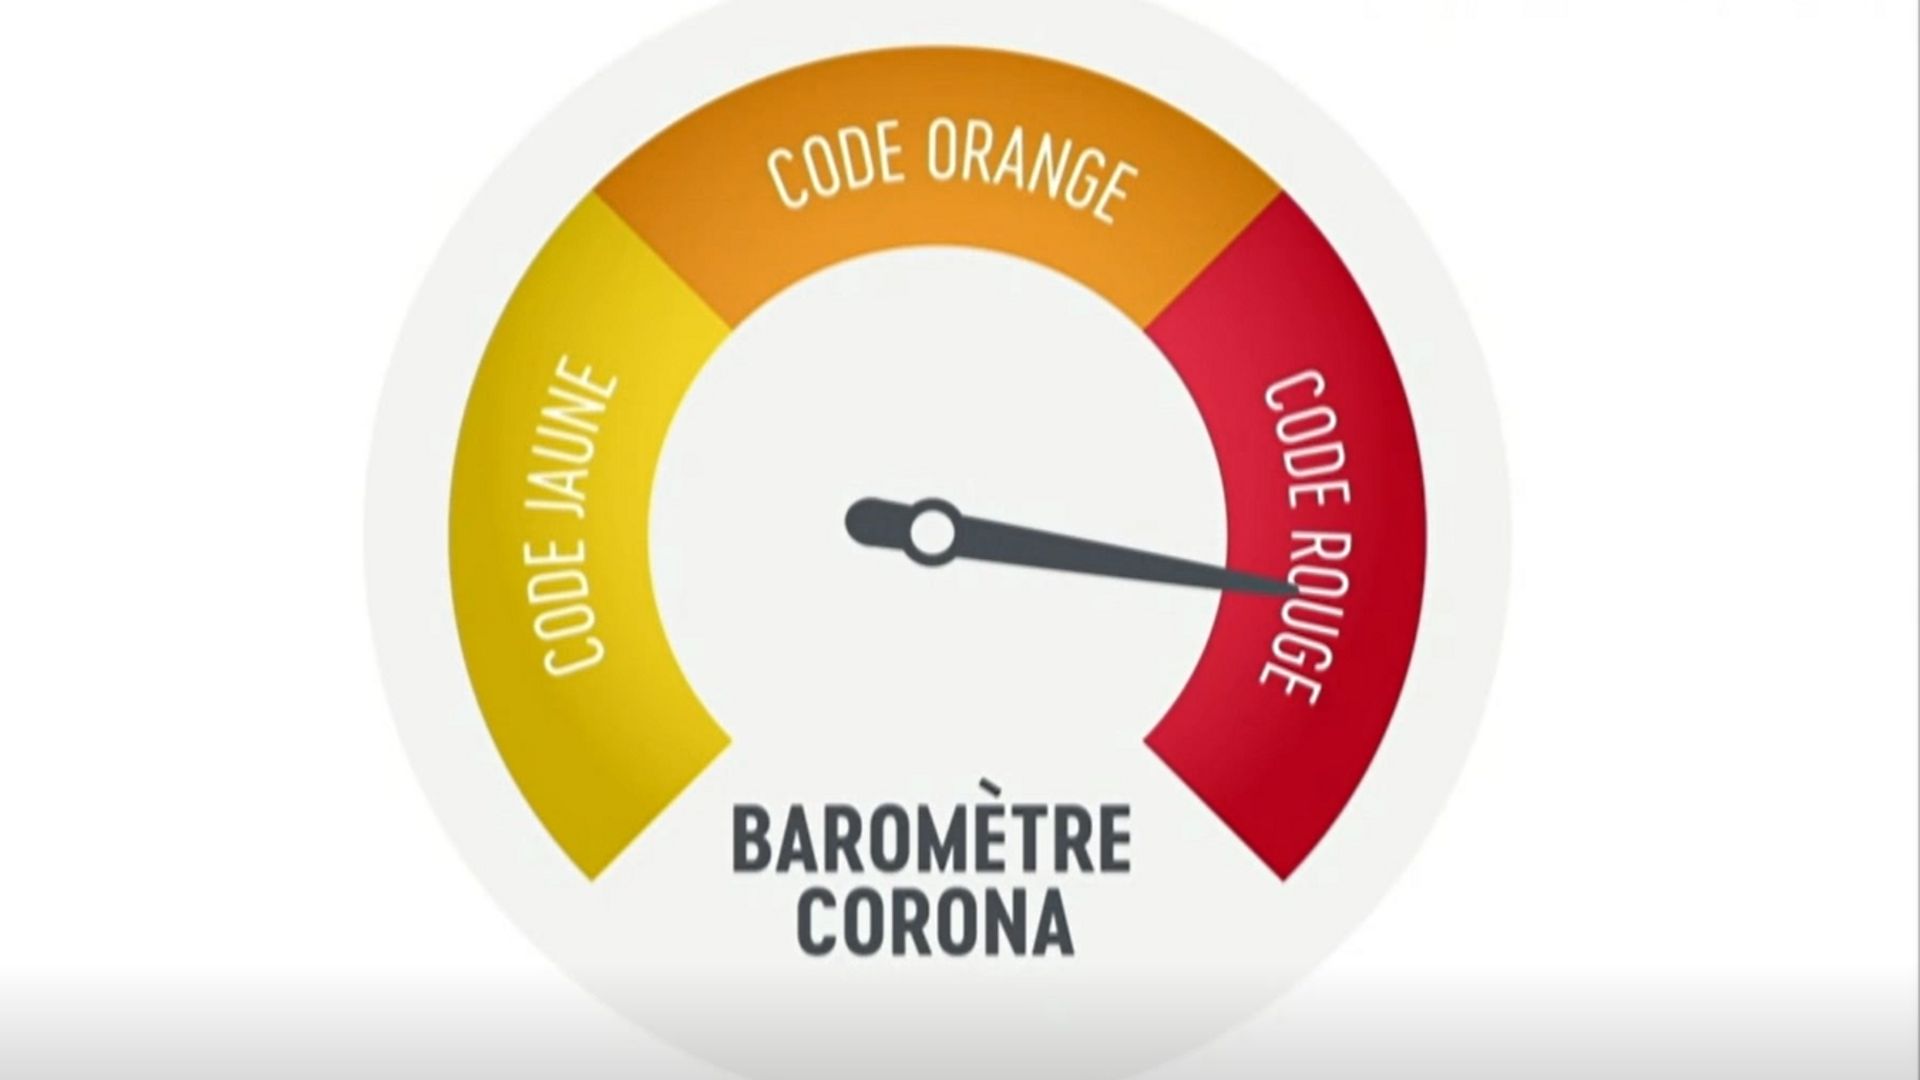 Selon les critères du baromètre Corona, que faudrait-il pour passer au  'Code orange', et quelles seraient les conséquences? 